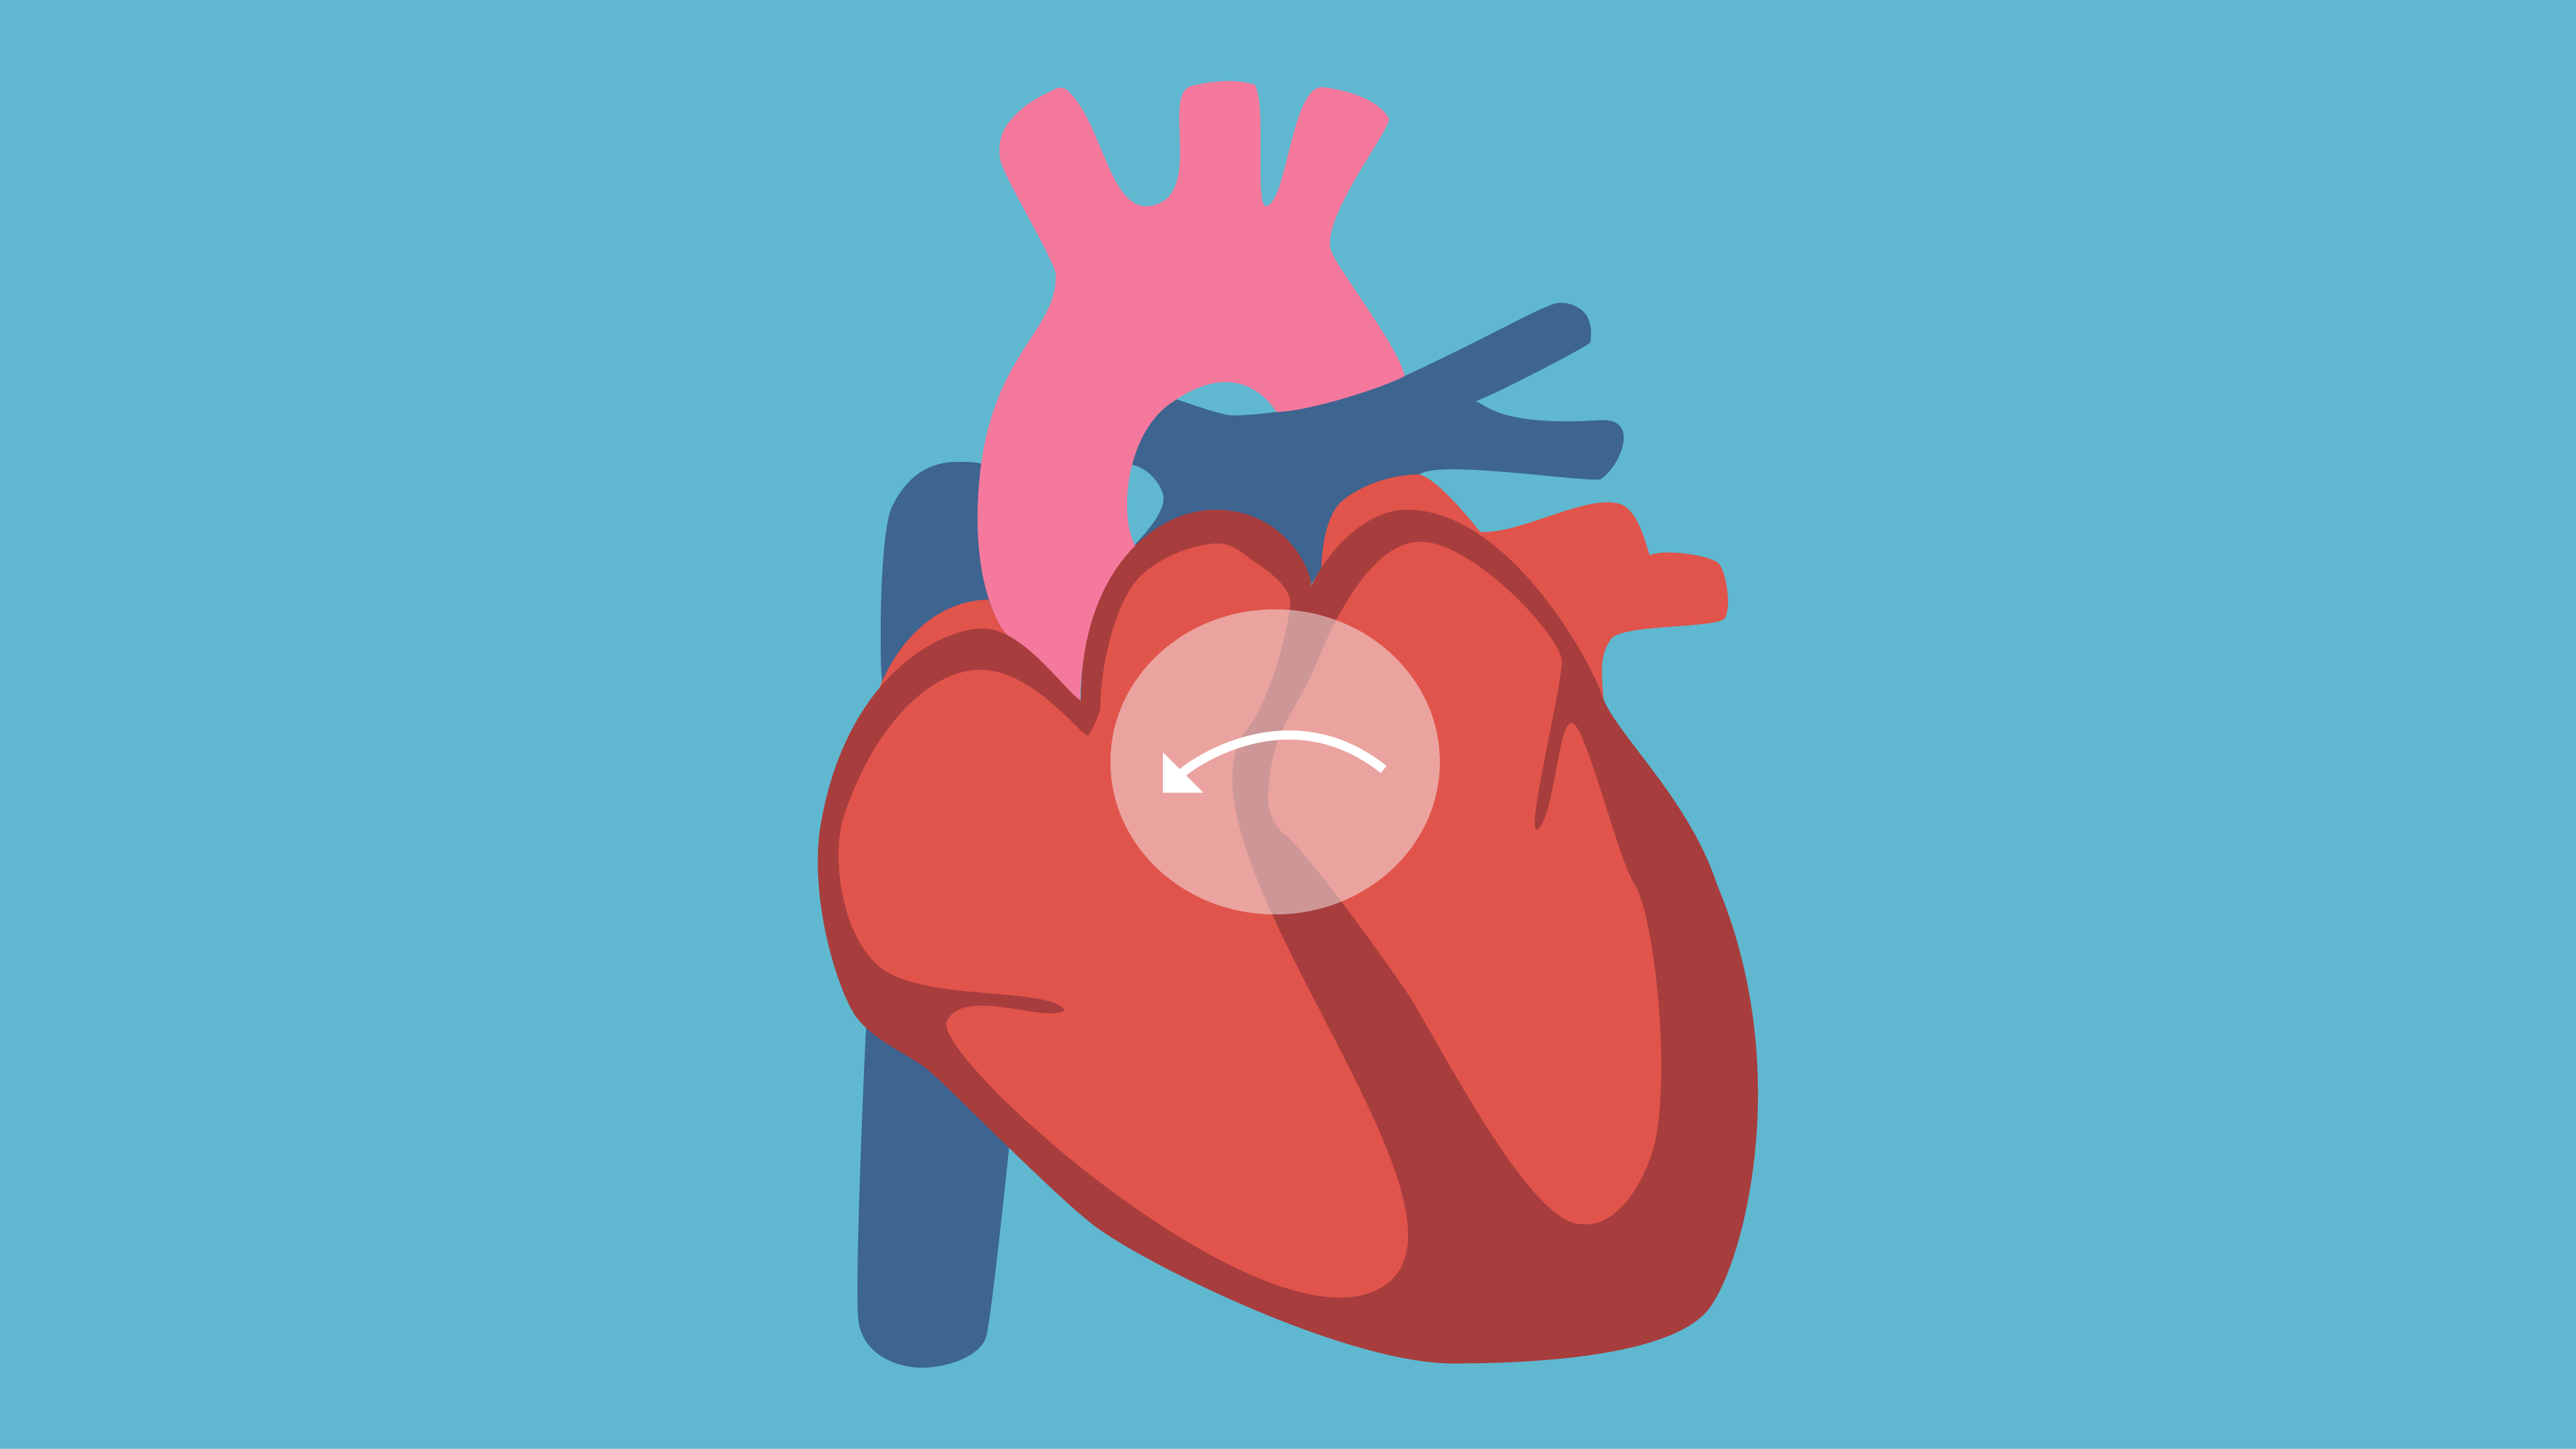 Які симптоми вказуватимуть на розвиток вродженої вади серця?